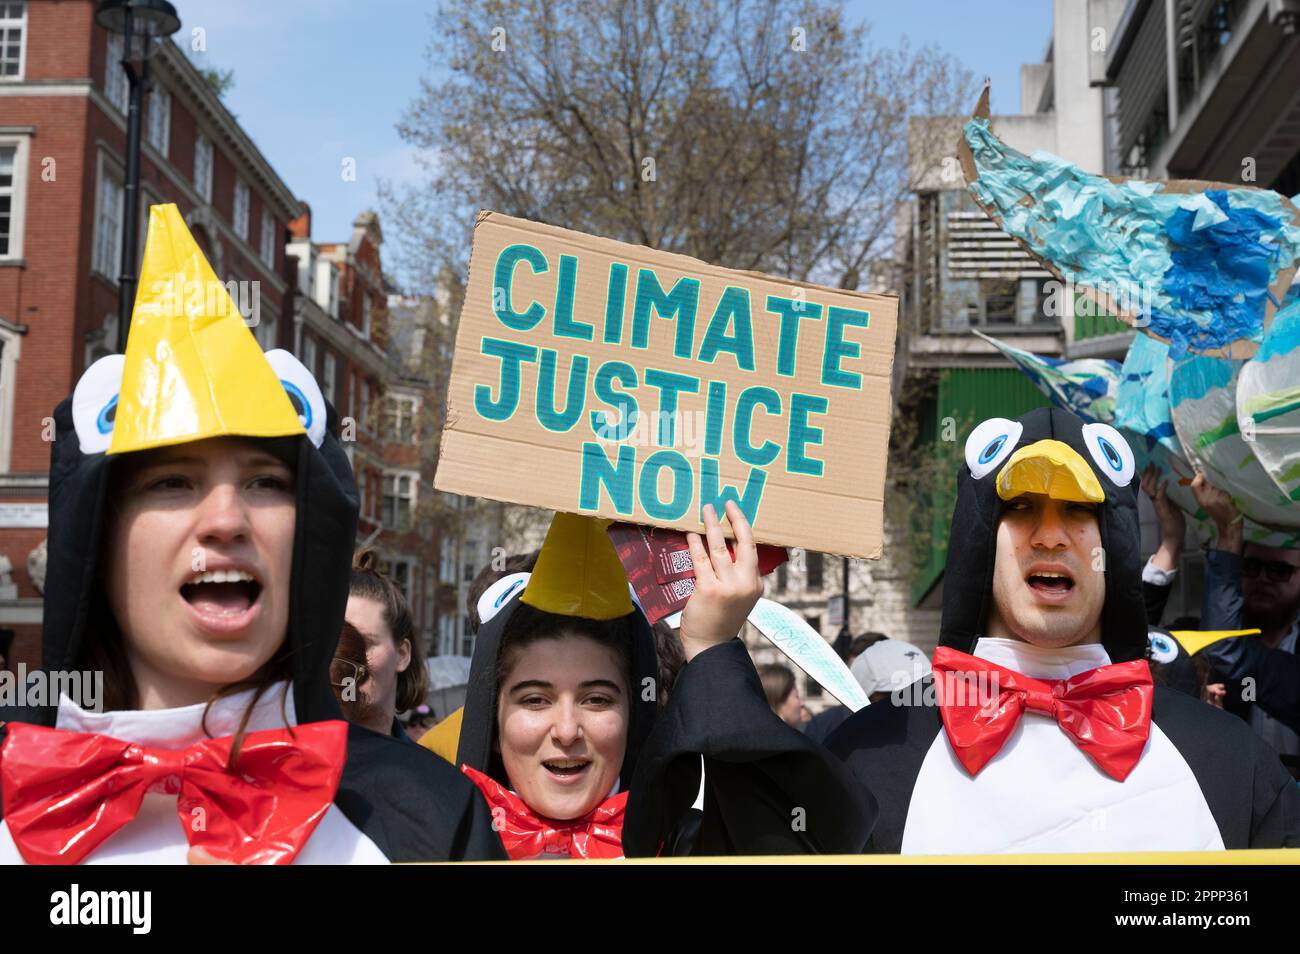 Vestiti da pinguini, gli attivisti chiedono giustizia per il clima e che il governo faccia di più per affrontare il cambiamento climatico. Foto Stock